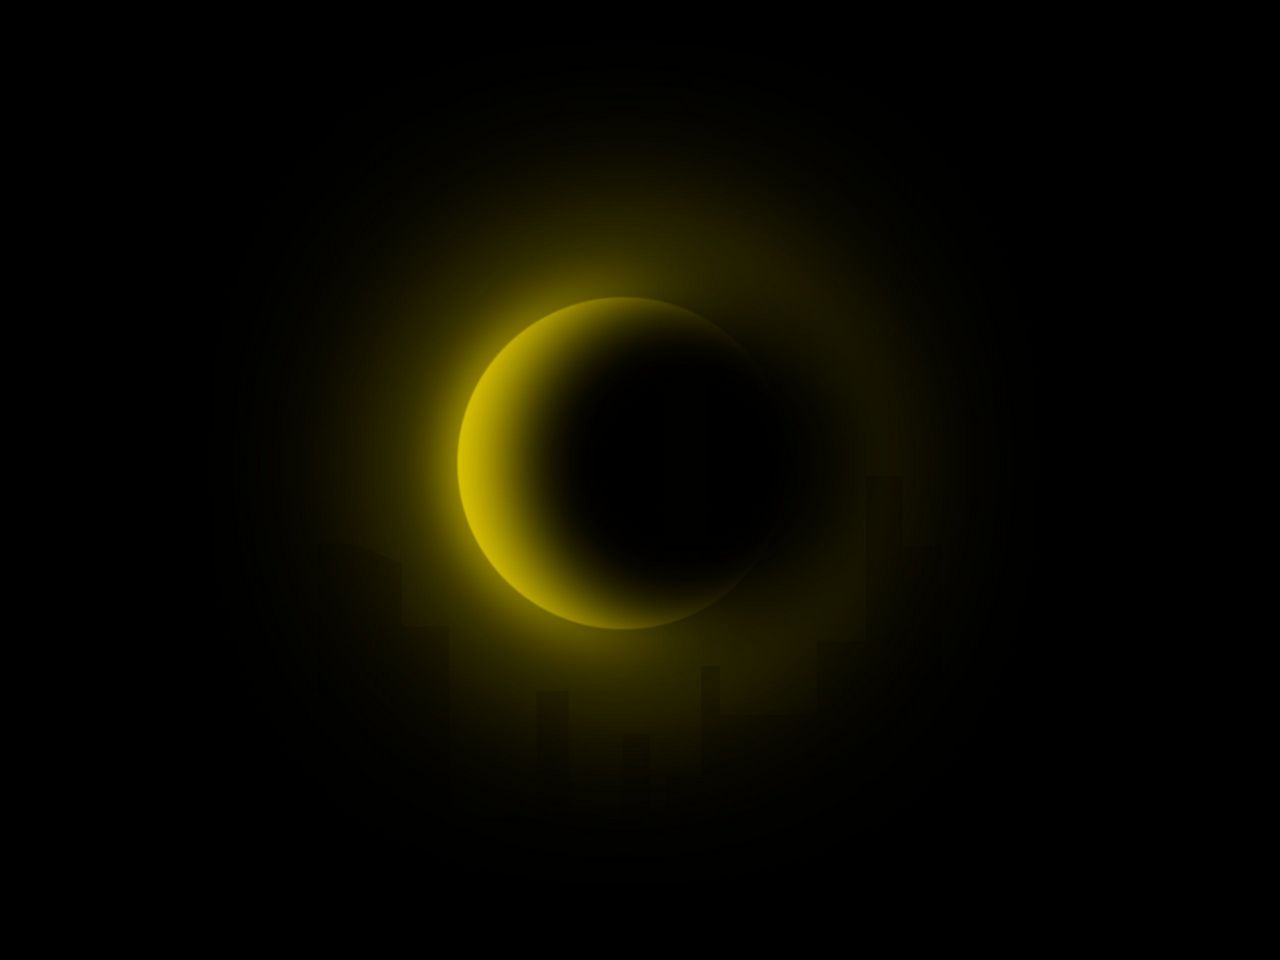 Tapeta, obrázek Zatmění Slunce - 1280x960 px. Wallpaper na plochu PC zdarma